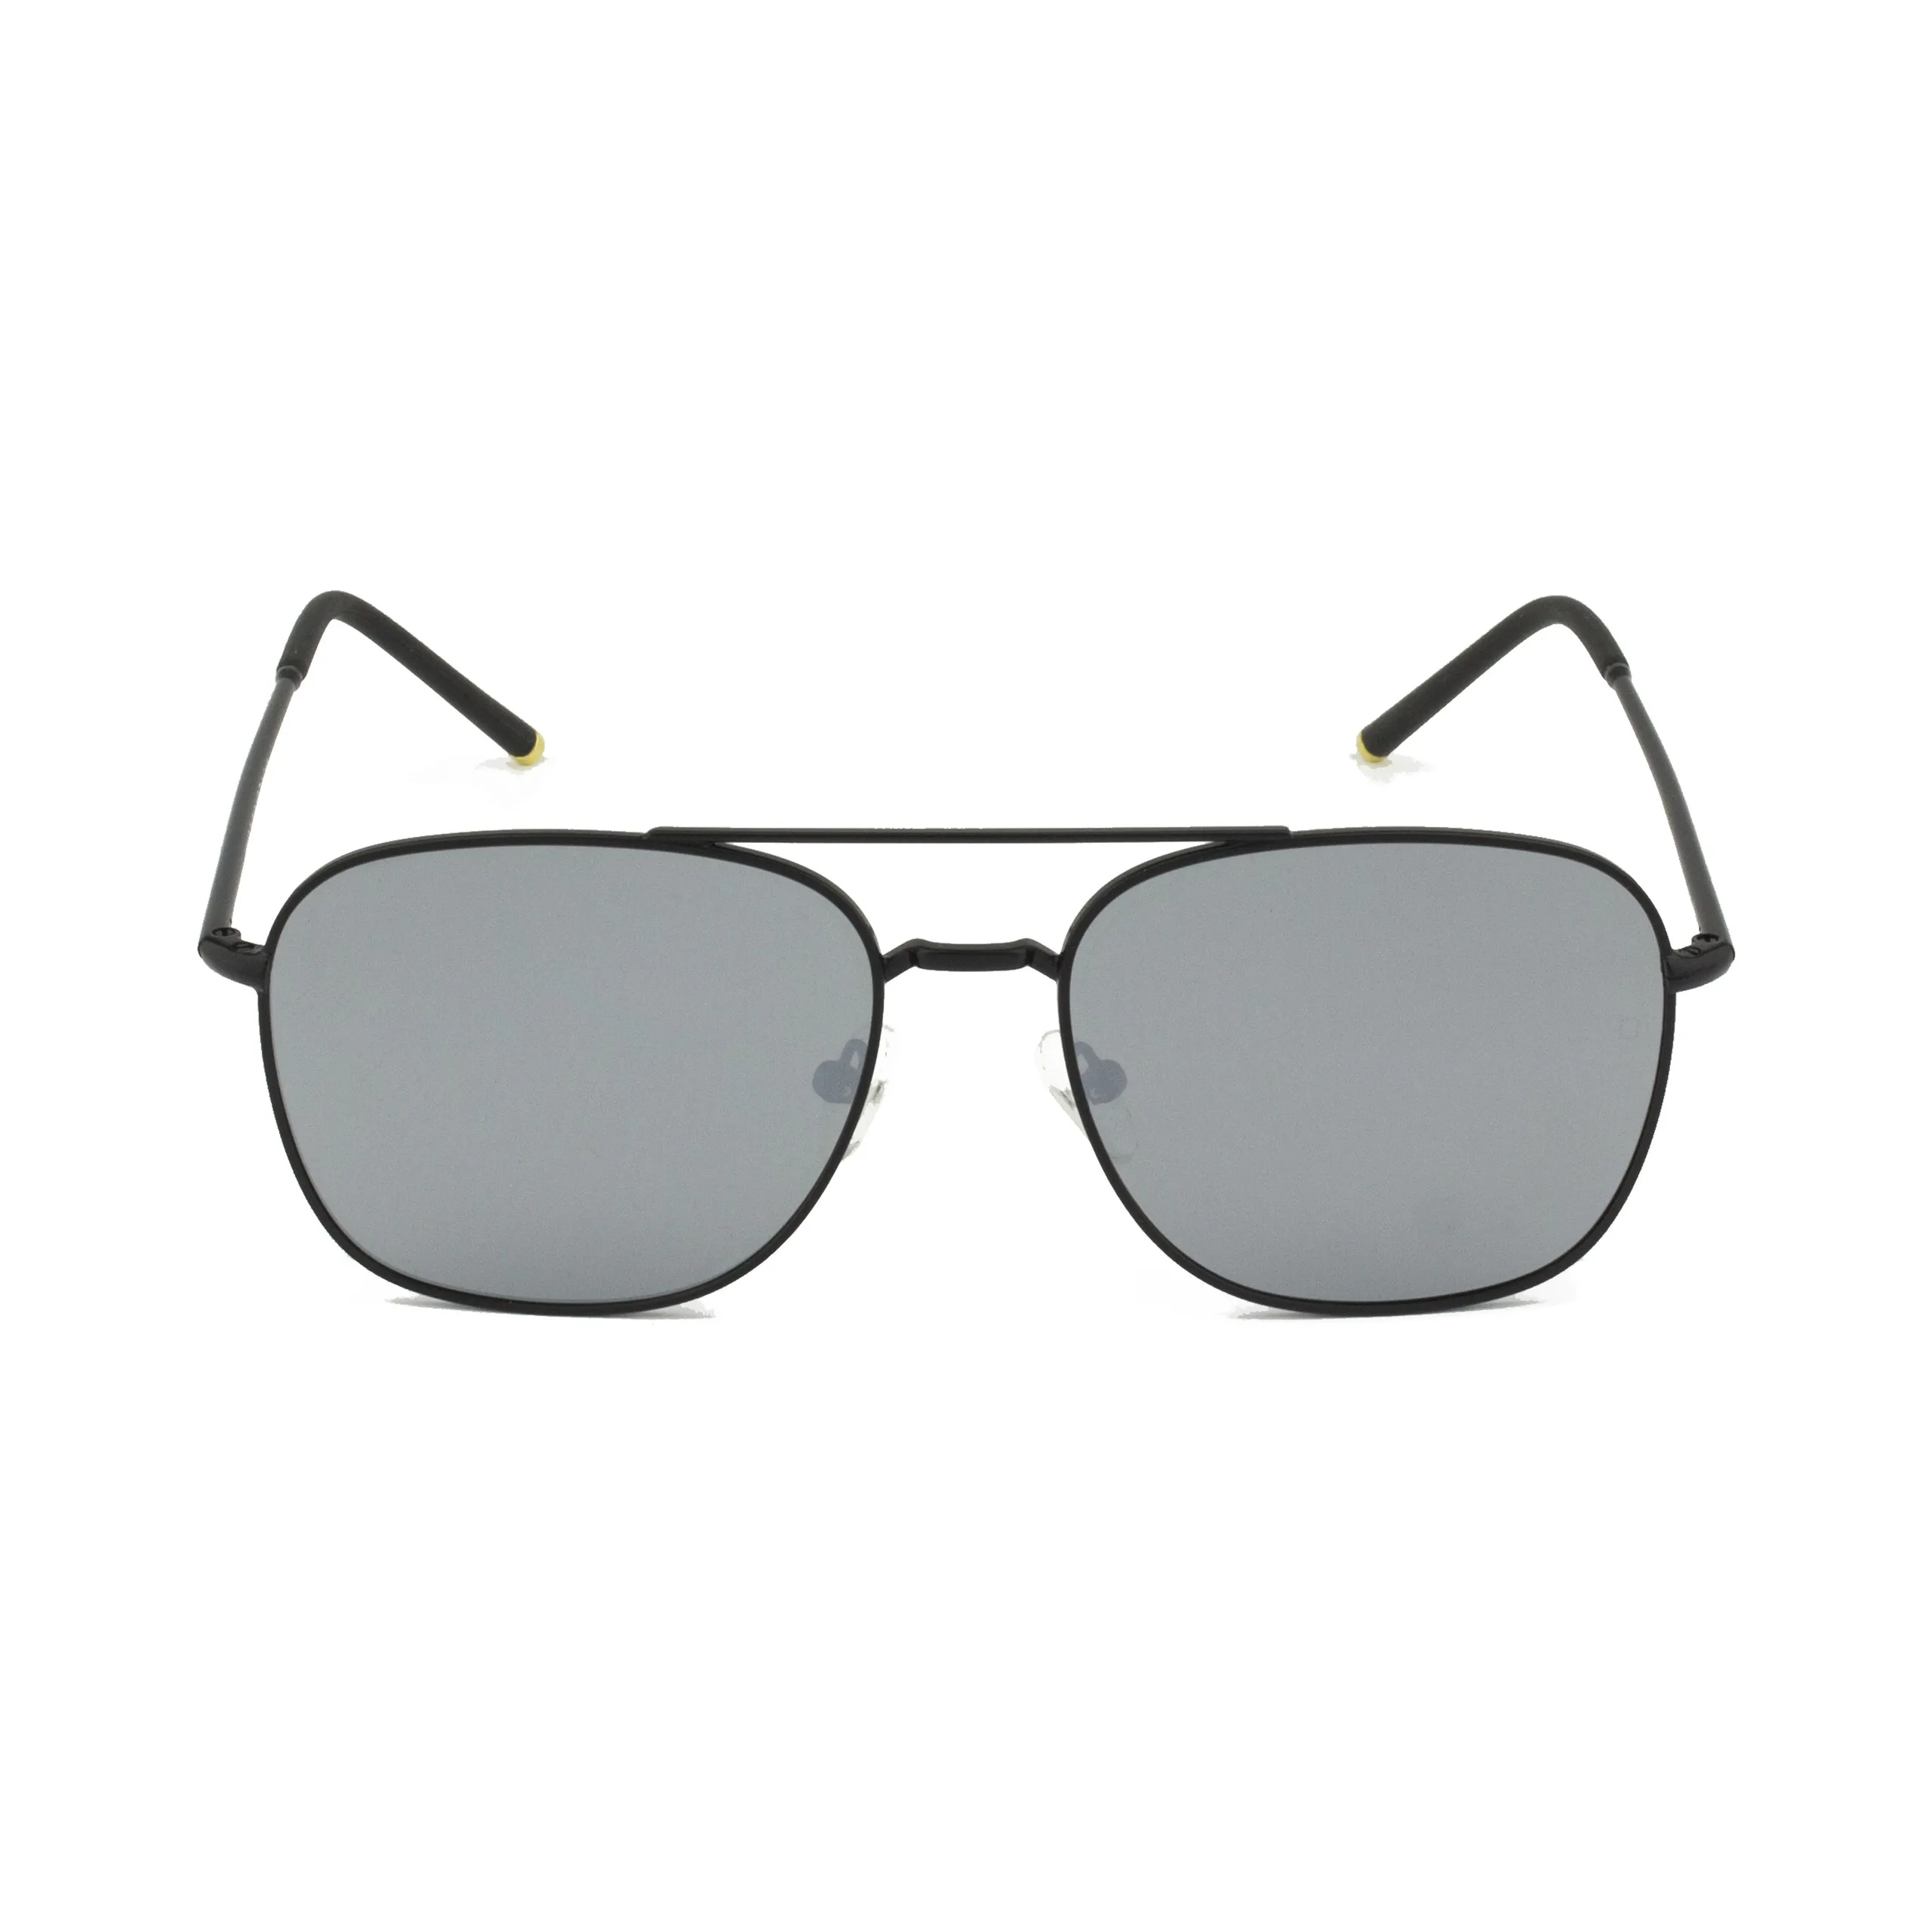 Zolo eyewear m1145 зеркальные поляризованные солнцезащитные очки